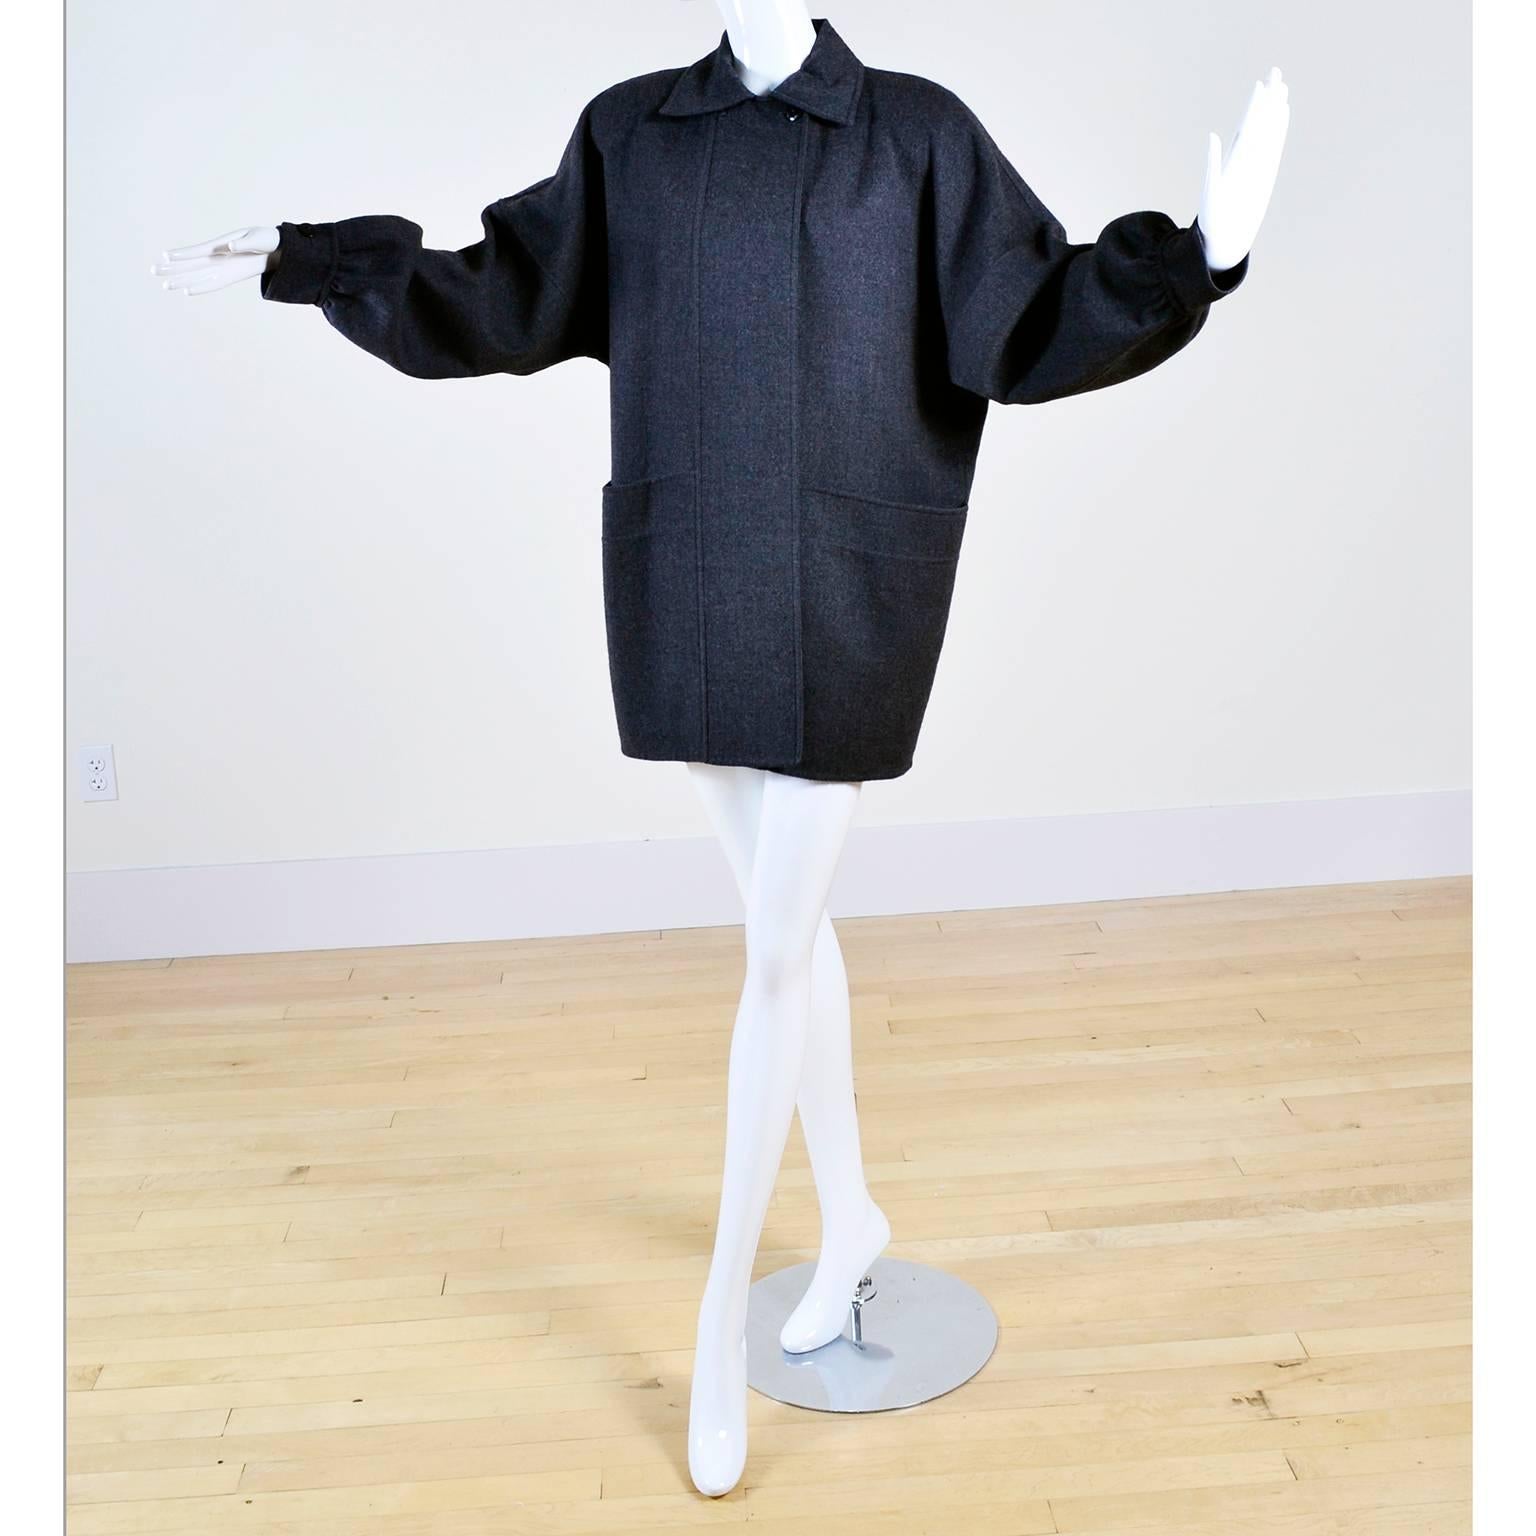 Dies ist eine fabelhafte 1980's Salvatore Ferragamo Vintage graue Wolljacke mit Fronttaschen. Das wäre eine tolle Ergänzung für jede Herbst- und Wintergarderobe!  Dieser vielseitige Mantel aus den 80er Jahren hat eine klassische Oversized-Passform